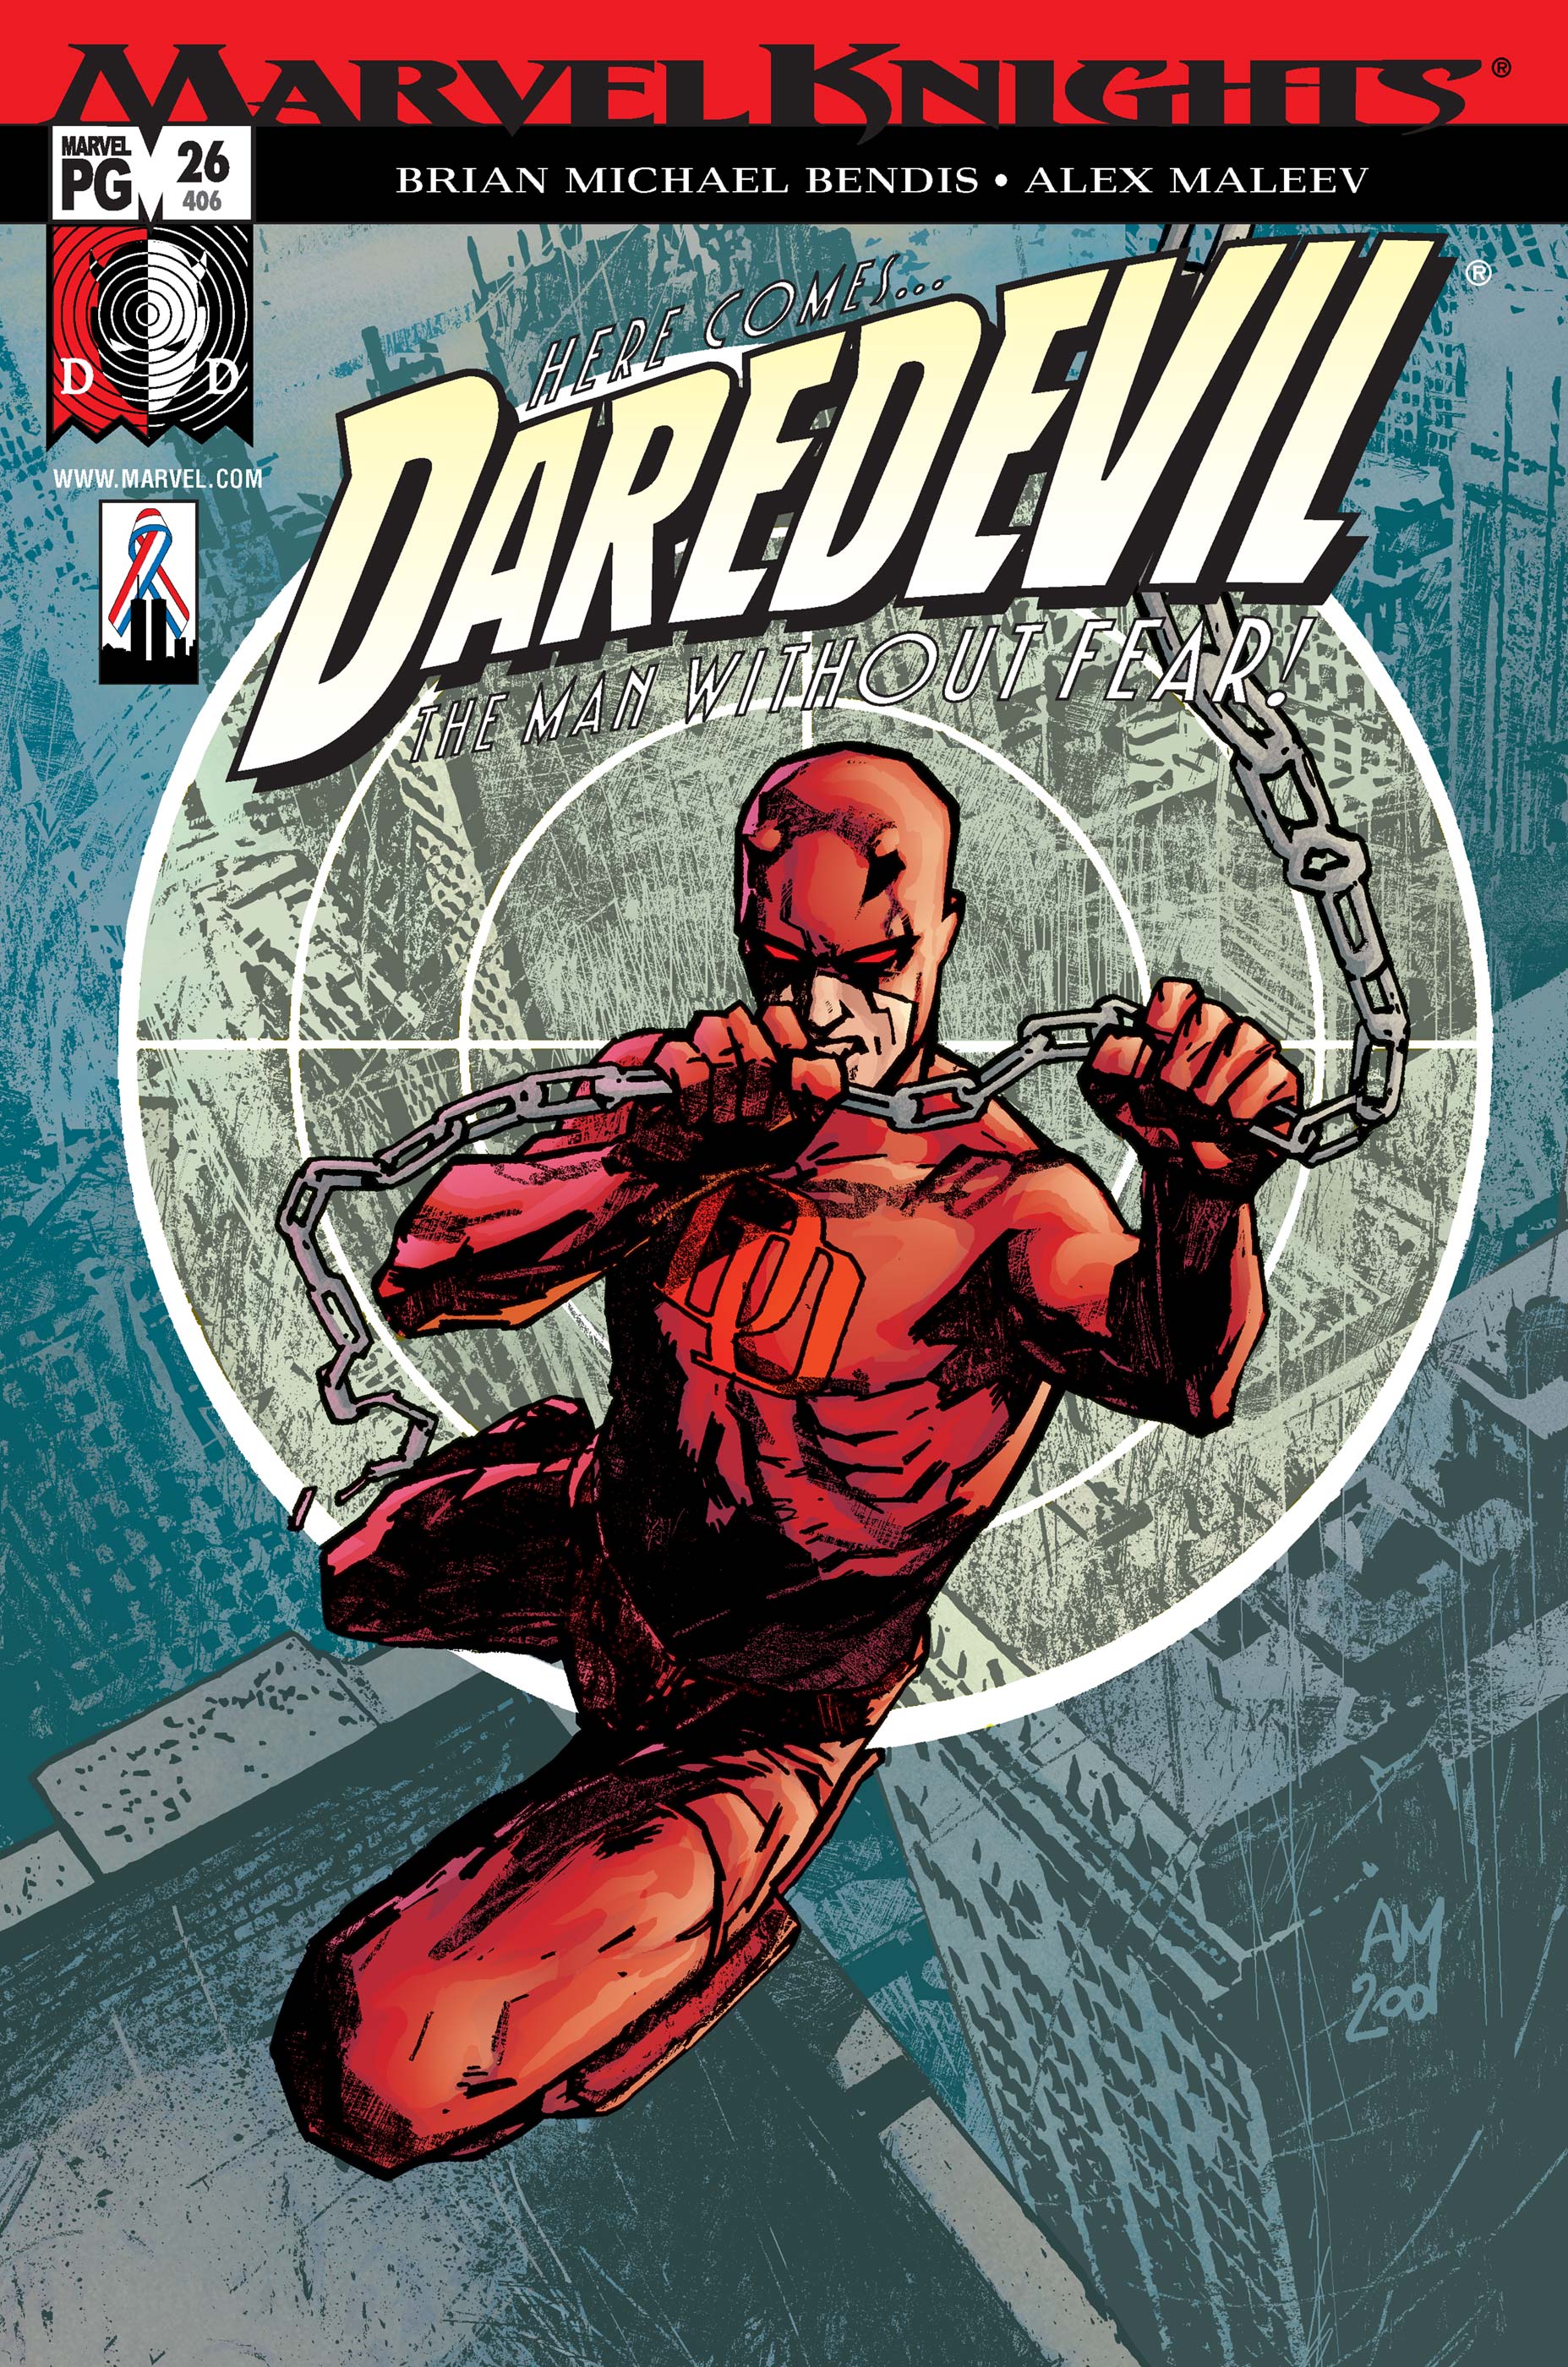 Daredevil Vol. IV: Underboss (Trade Paperback)